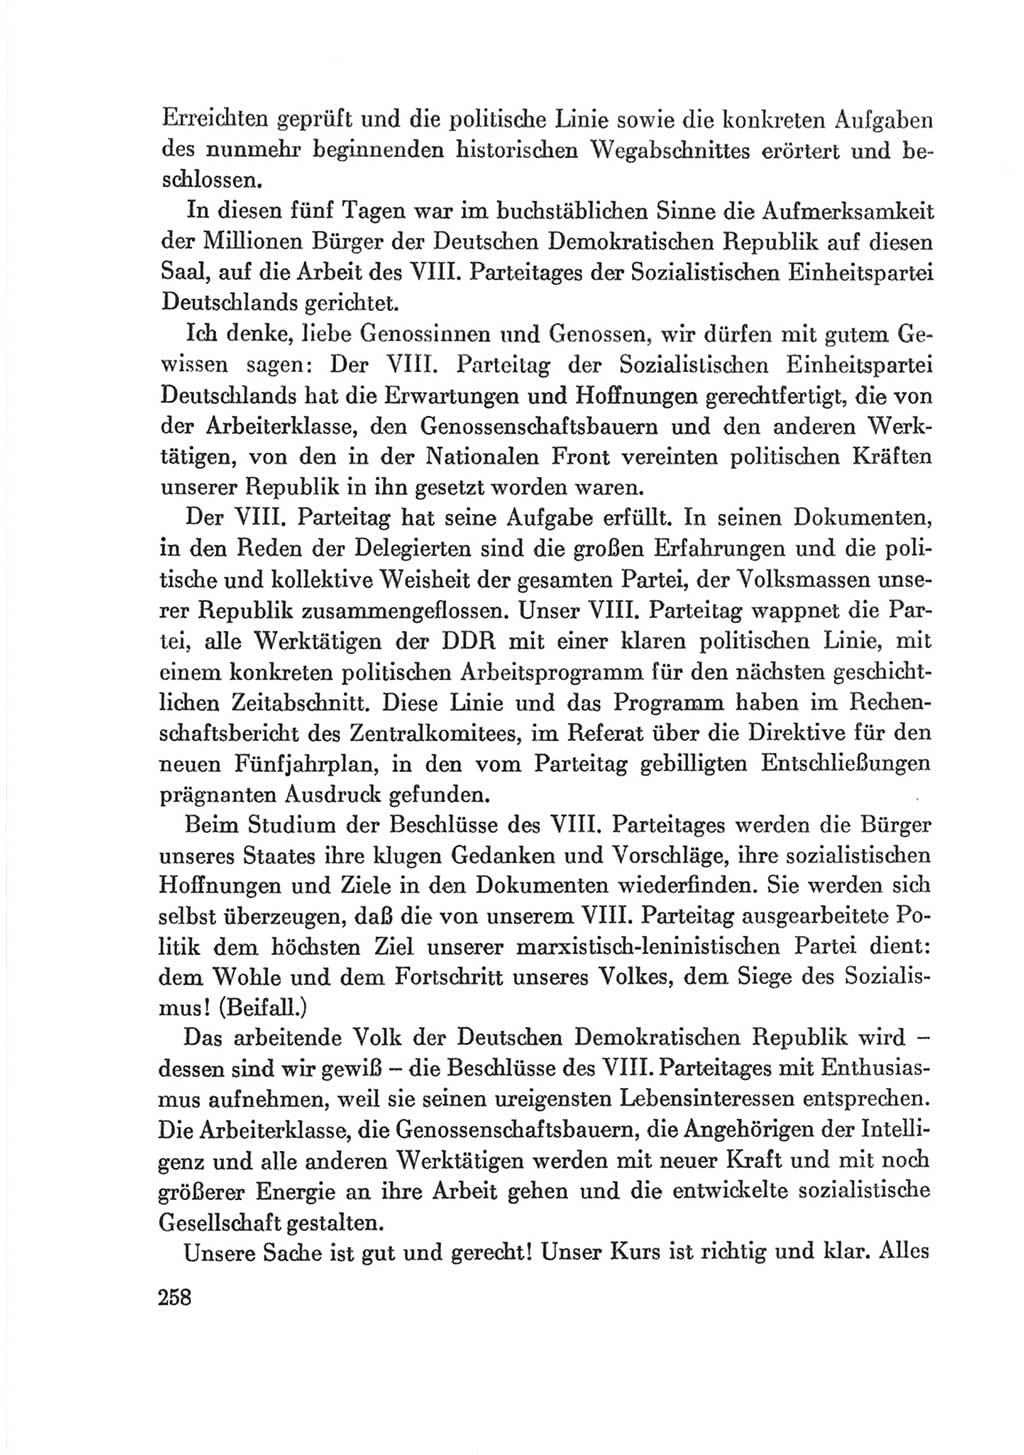 Protokoll der Verhandlungen des Ⅷ. Parteitages der Sozialistischen Einheitspartei Deutschlands (SED) [Deutsche Demokratische Republik (DDR)] 1971, Band 2, Seite 258 (Prot. Verh. Ⅷ. PT SED DDR 1971, Bd. 2, S. 258)